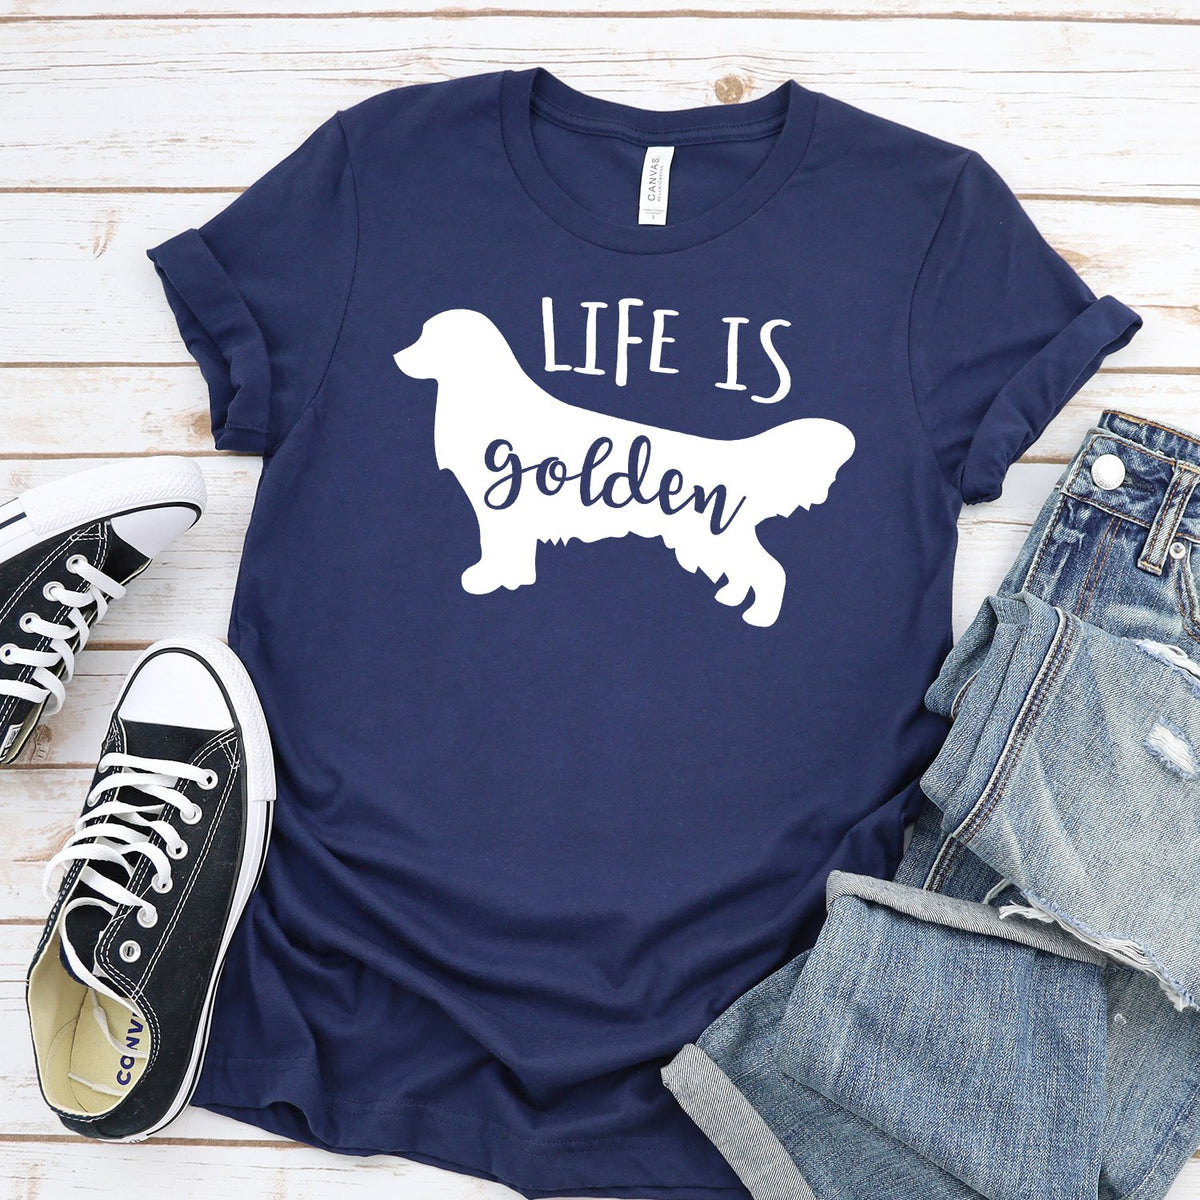 Life is Golden Retriever - Short Sleeve Tee Shirt